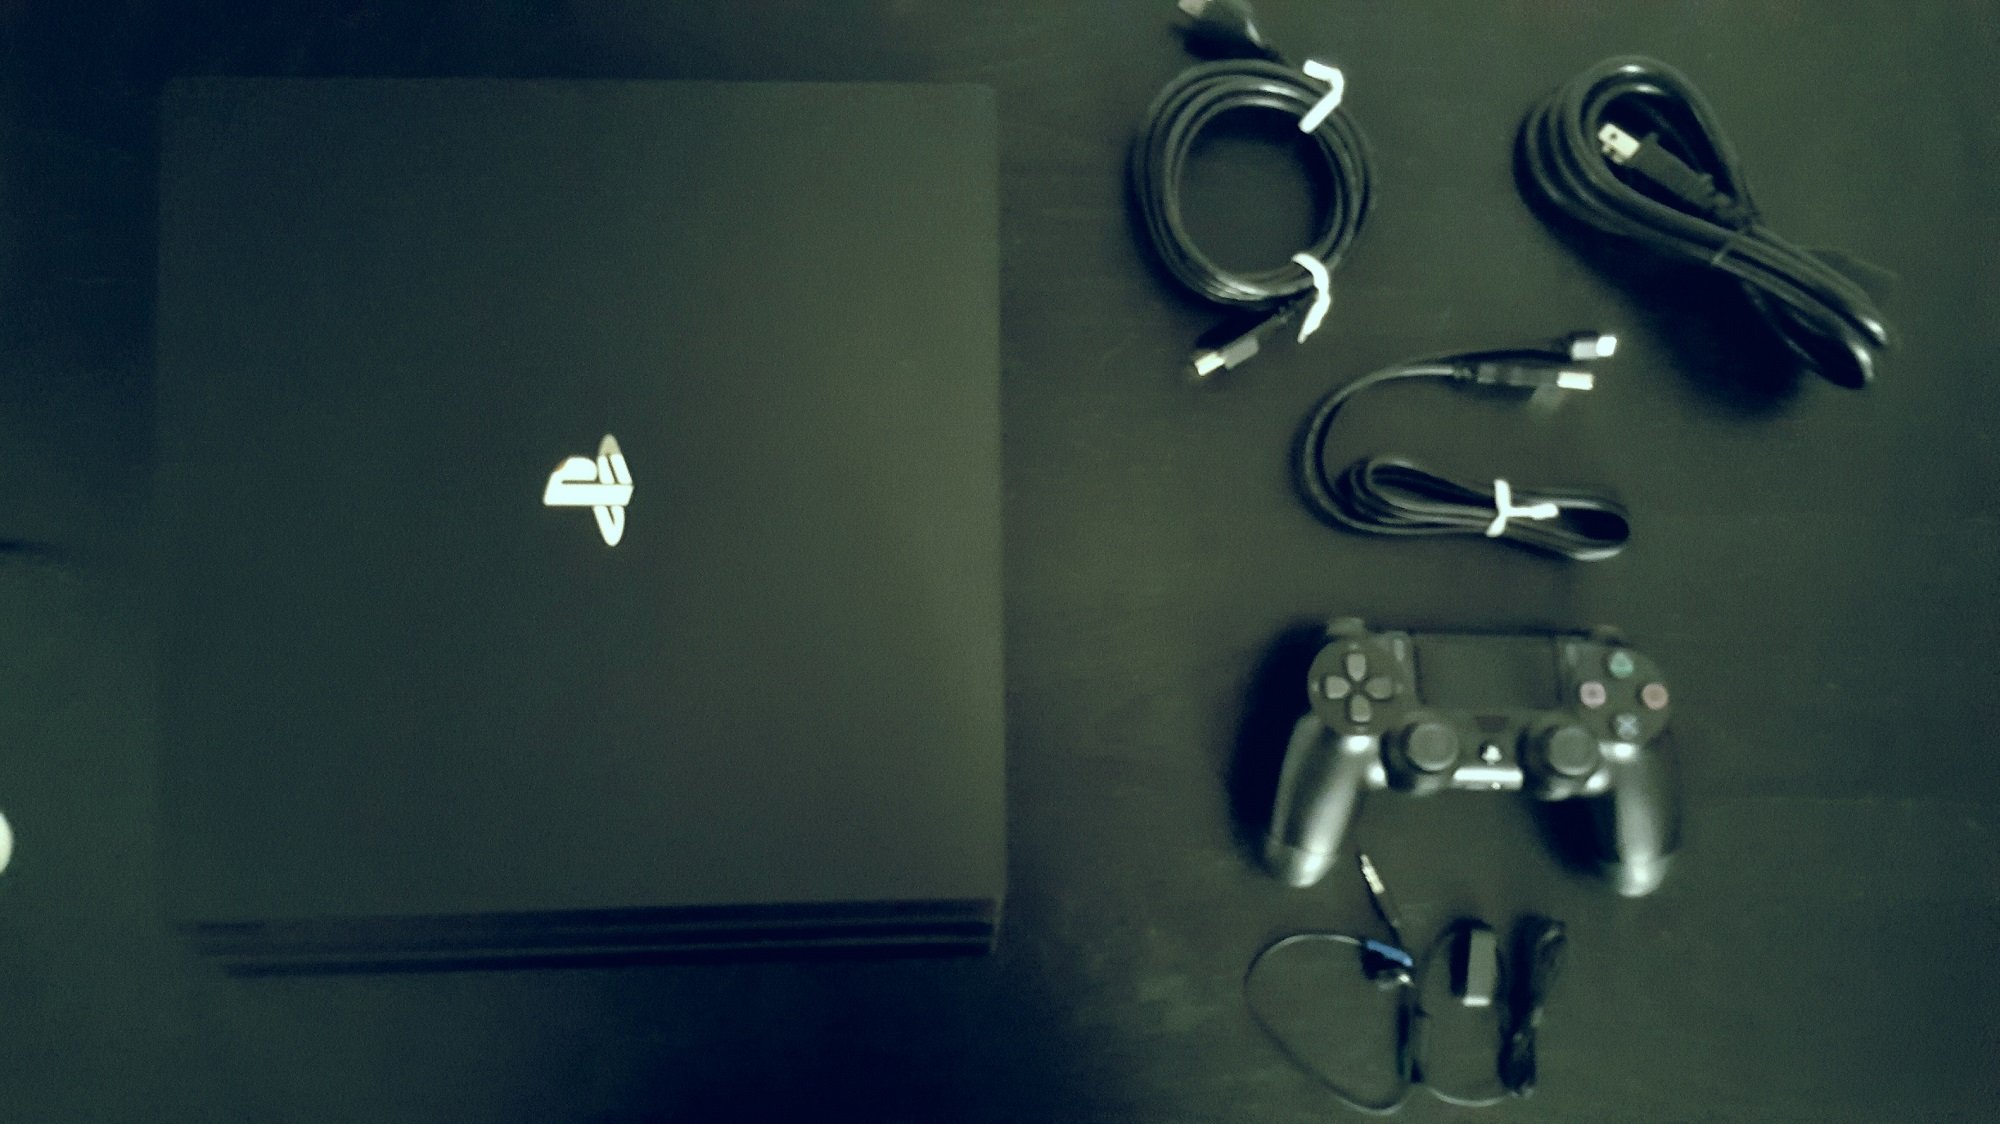 Анбоксинг PlayStation 4 Pro: новая консоль Sony и контроллер DualShock 4